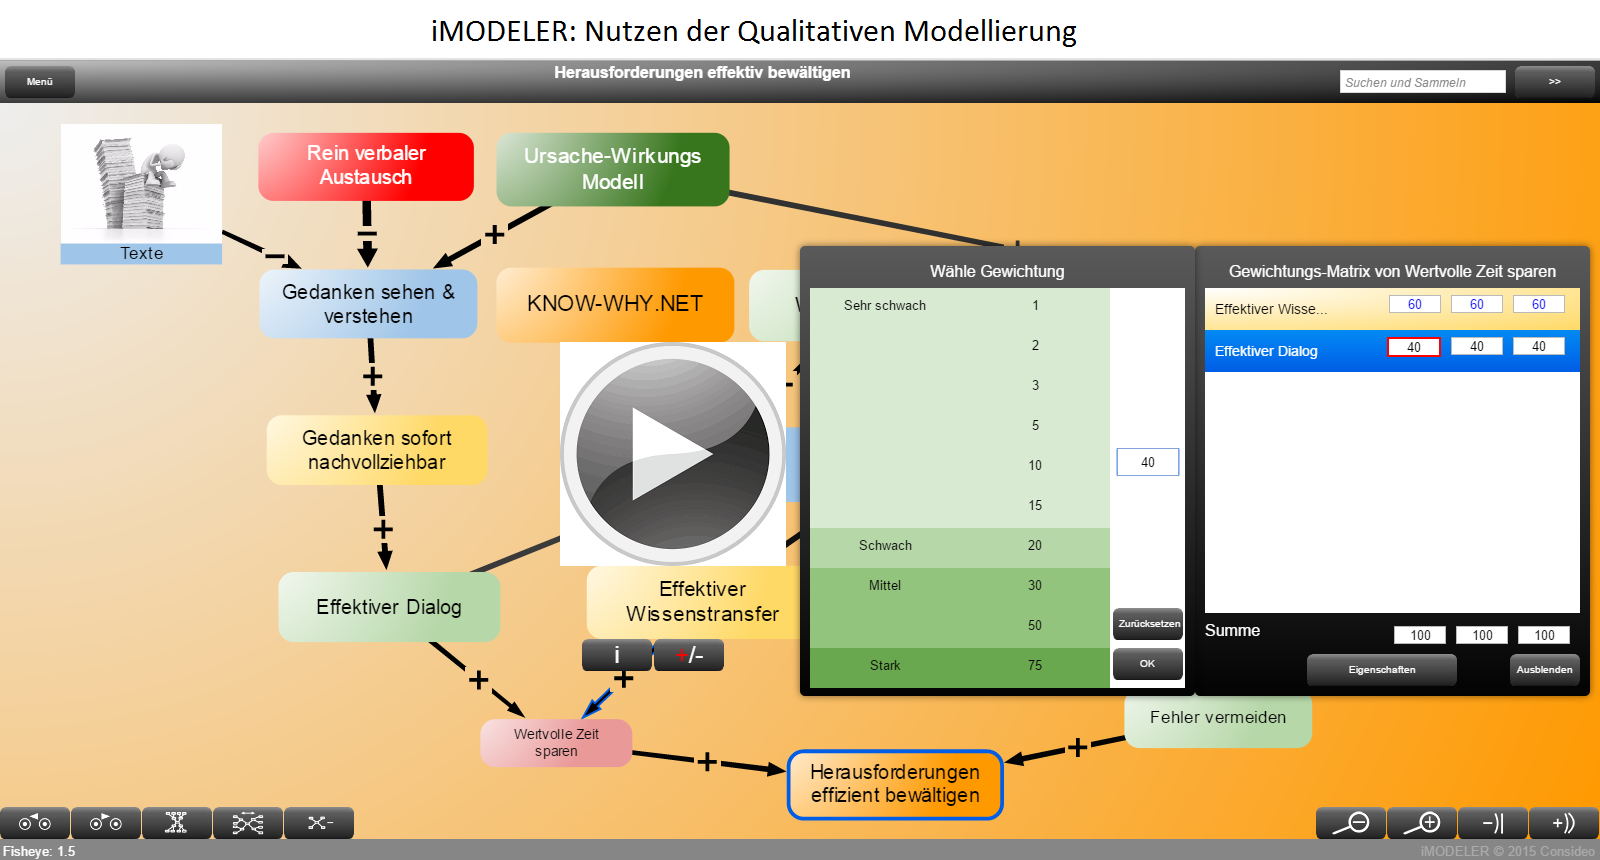 iMODELER: Qualitative Modellierung (Nutzen)